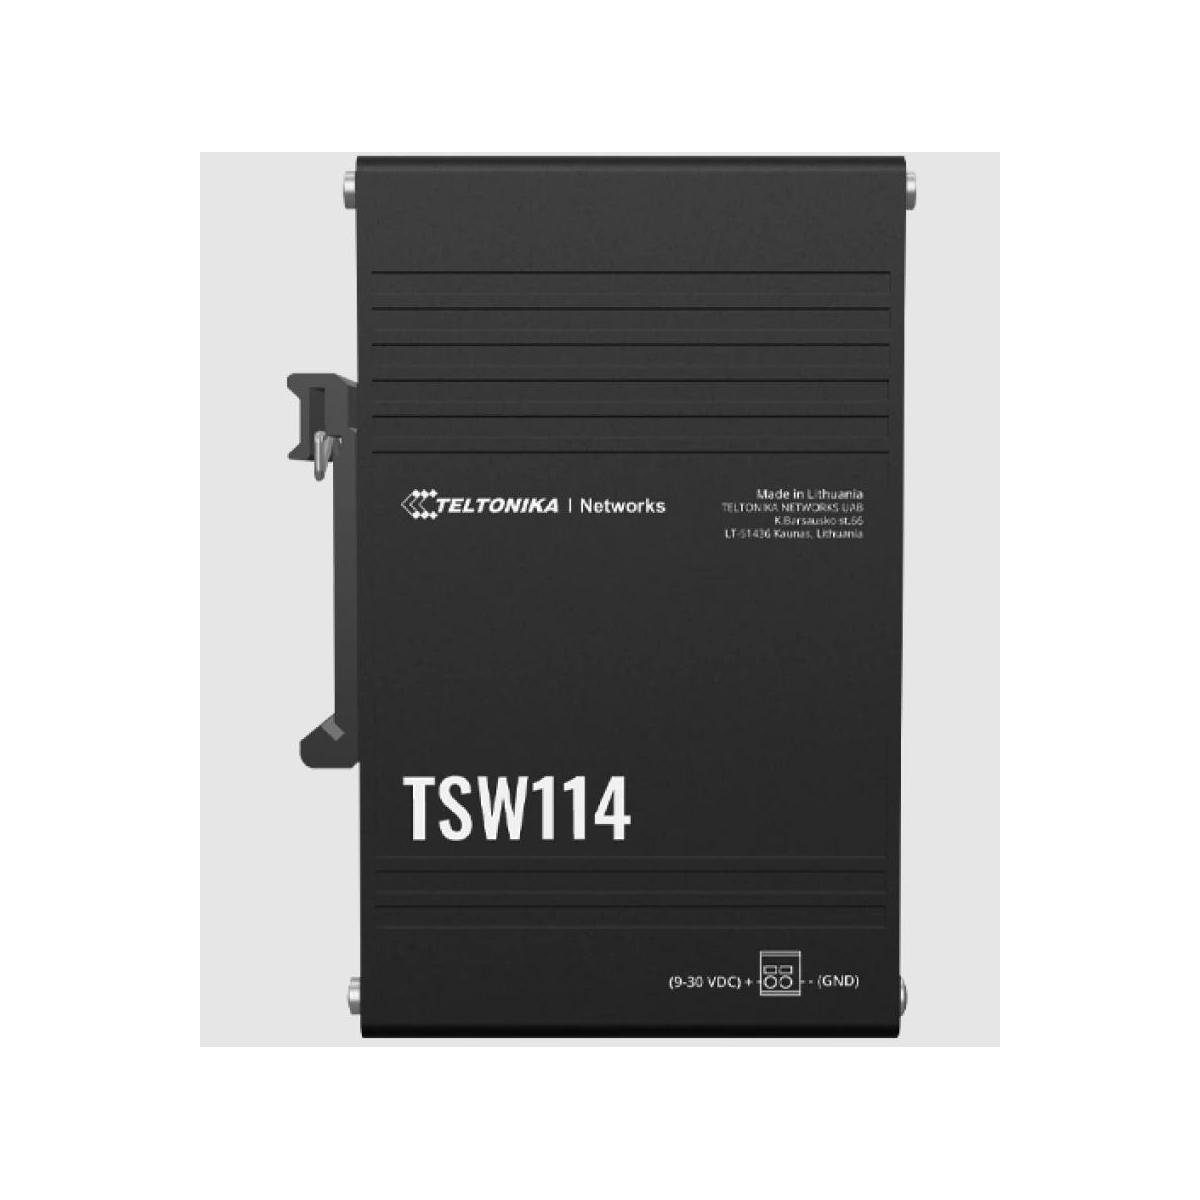 - DIN-Schienenhalterung Switch mit integrierter Teltonika TSW114 Netzwerk-Switch